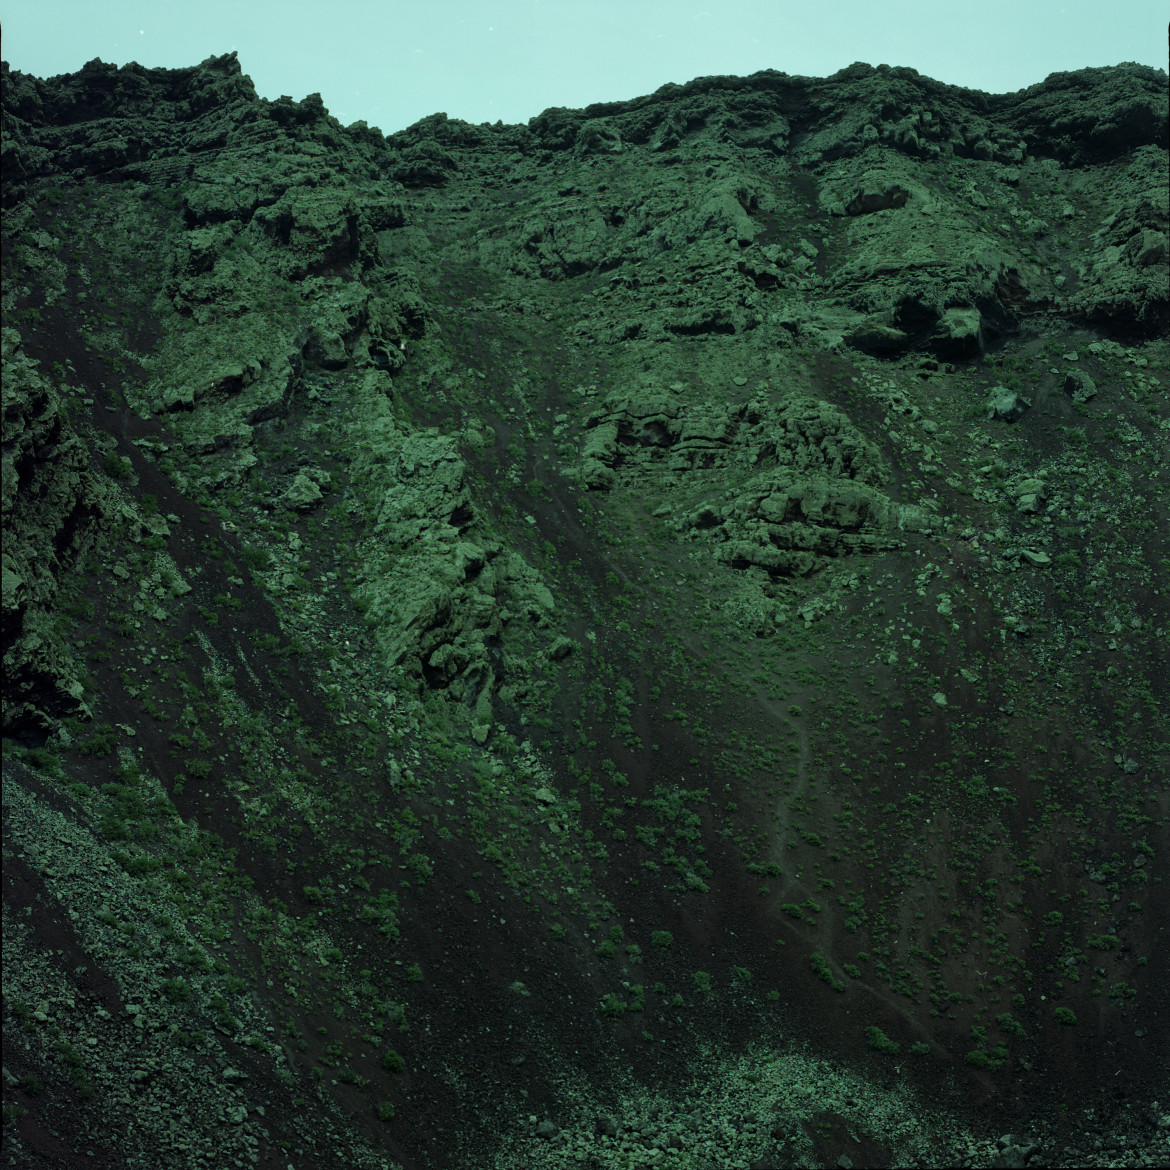 fot. Ola Grochowska, a green soul volcano, 2017, dzięki uprzejmości Wall Gallery (www.wallgallery.online)